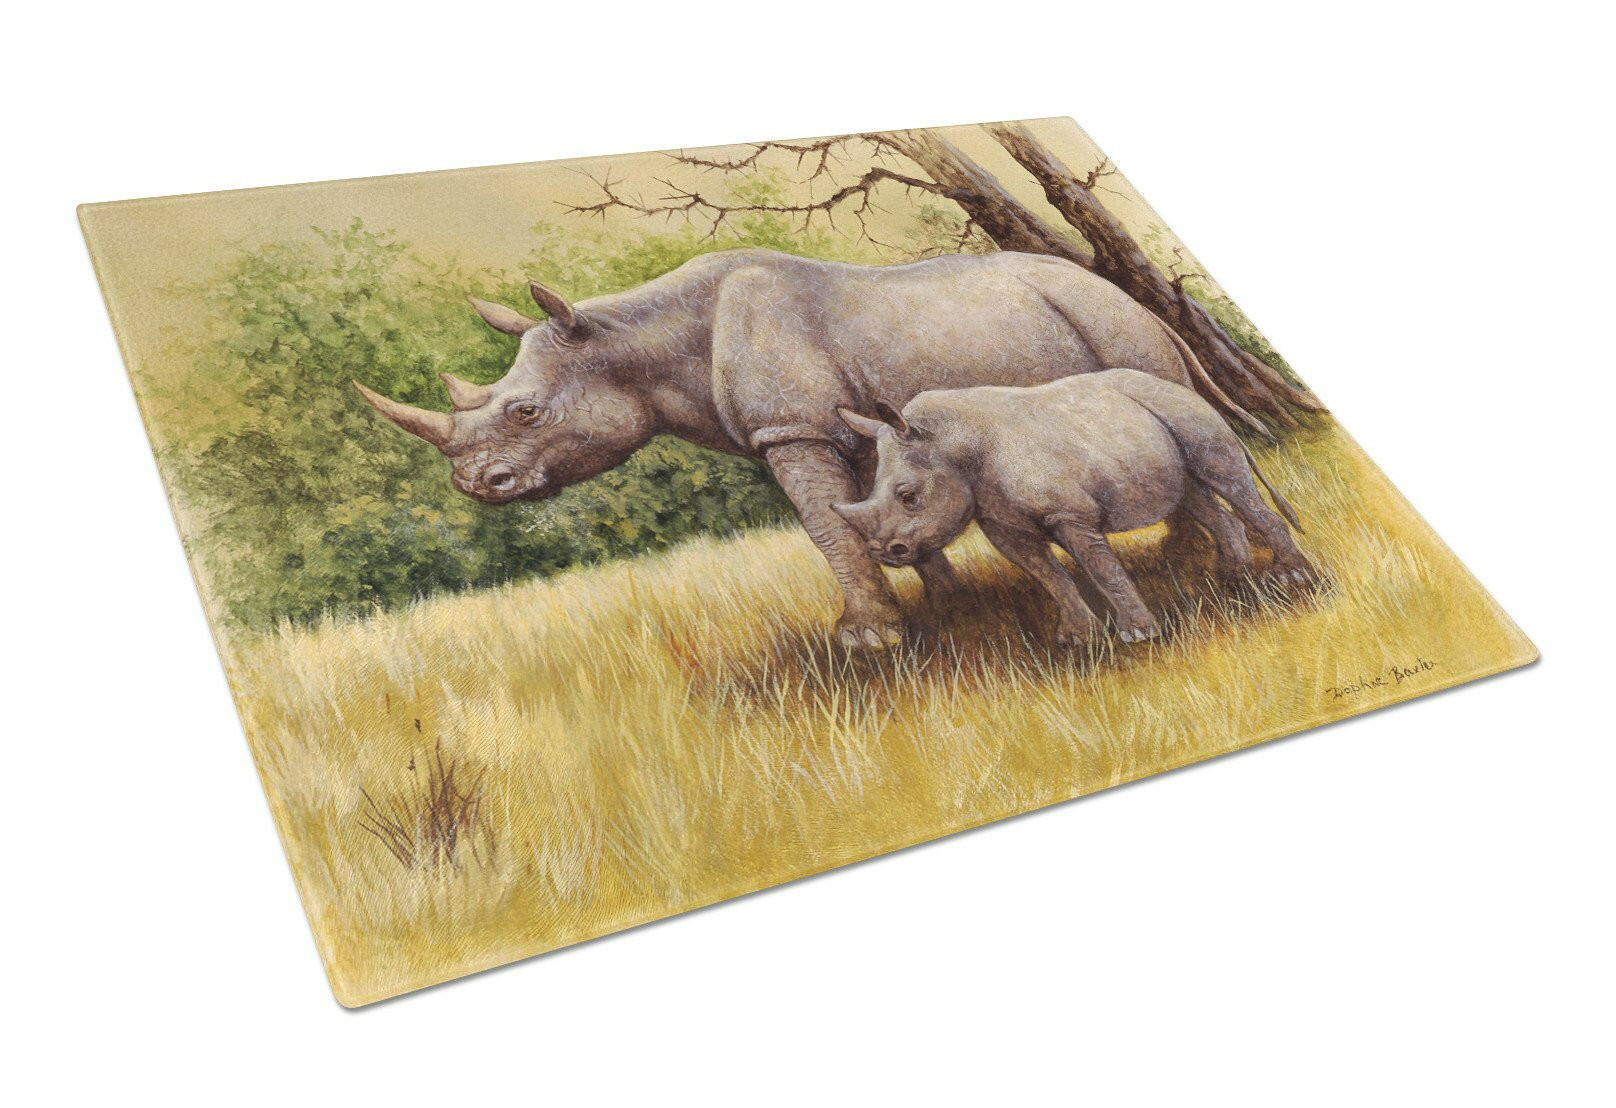 Rhinoceros by Daphne Baxter Glass Cutting Board Large BDBA0306LCB by Caroline's Treasures